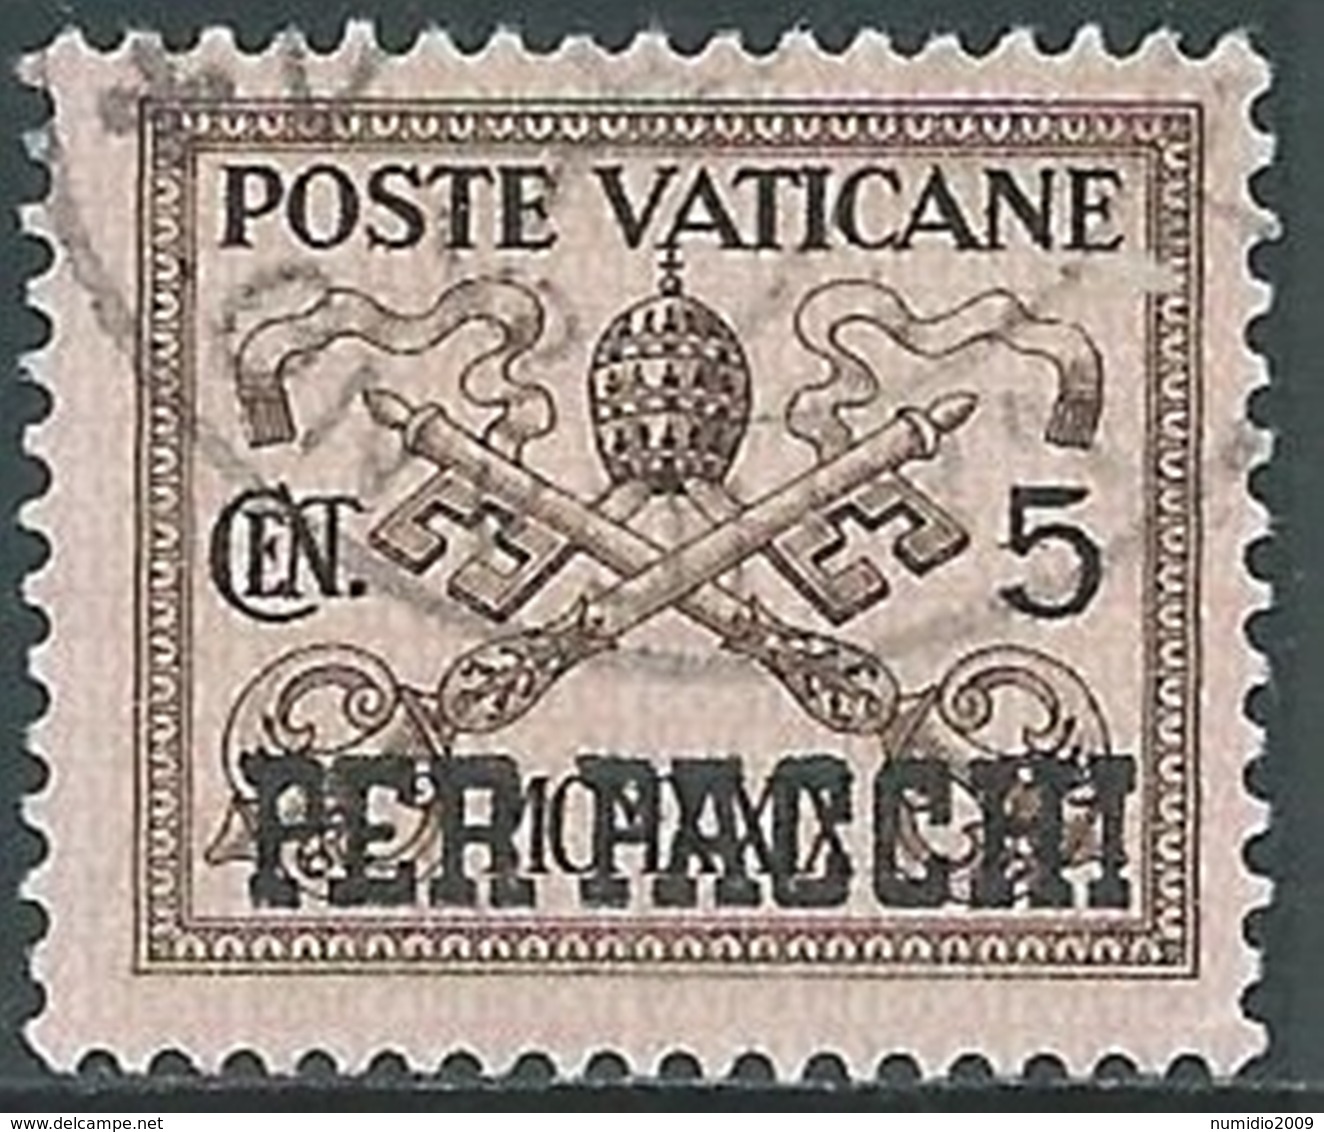 1931 VATICANO USATO PACCHI POSTALI 5 CENT - RB20 - Postpakketten